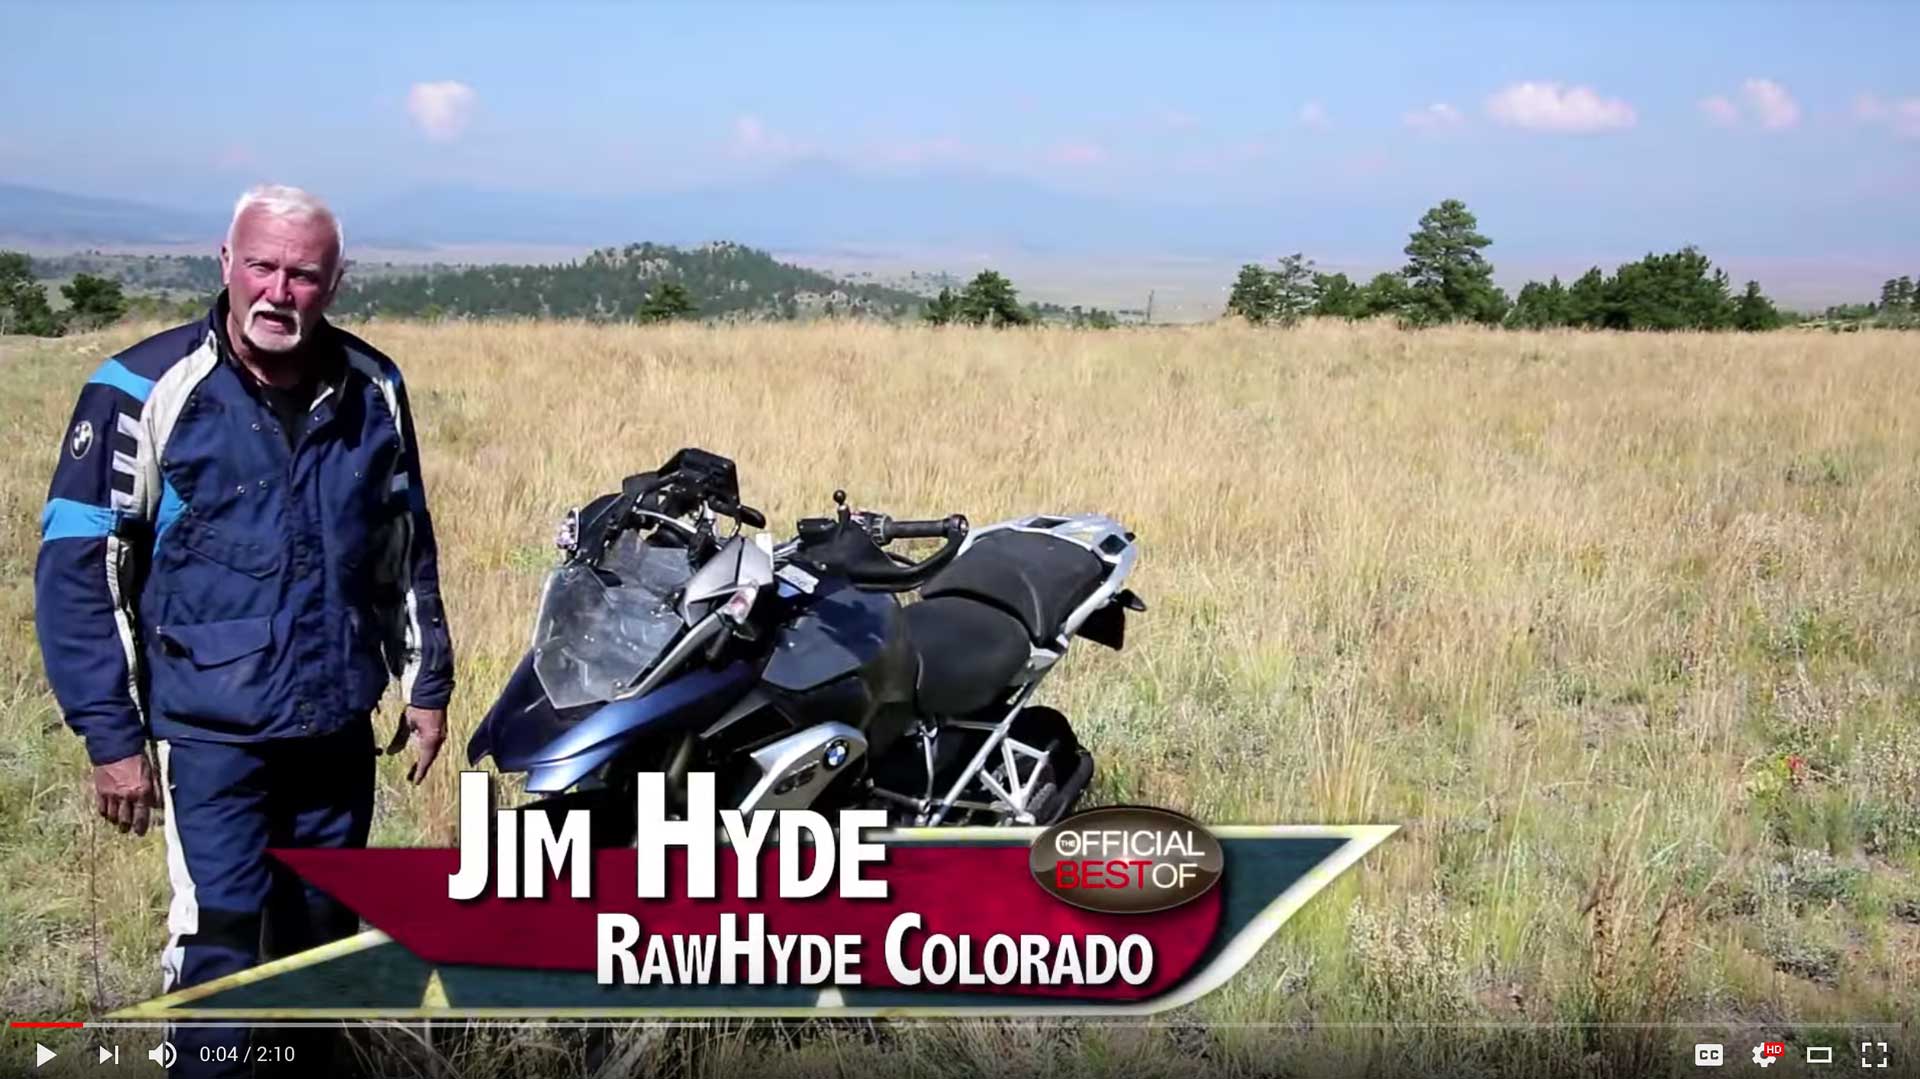 RawHyde Colorado - Best Adventure Motorcycle Training & Tours - Colorado 2015